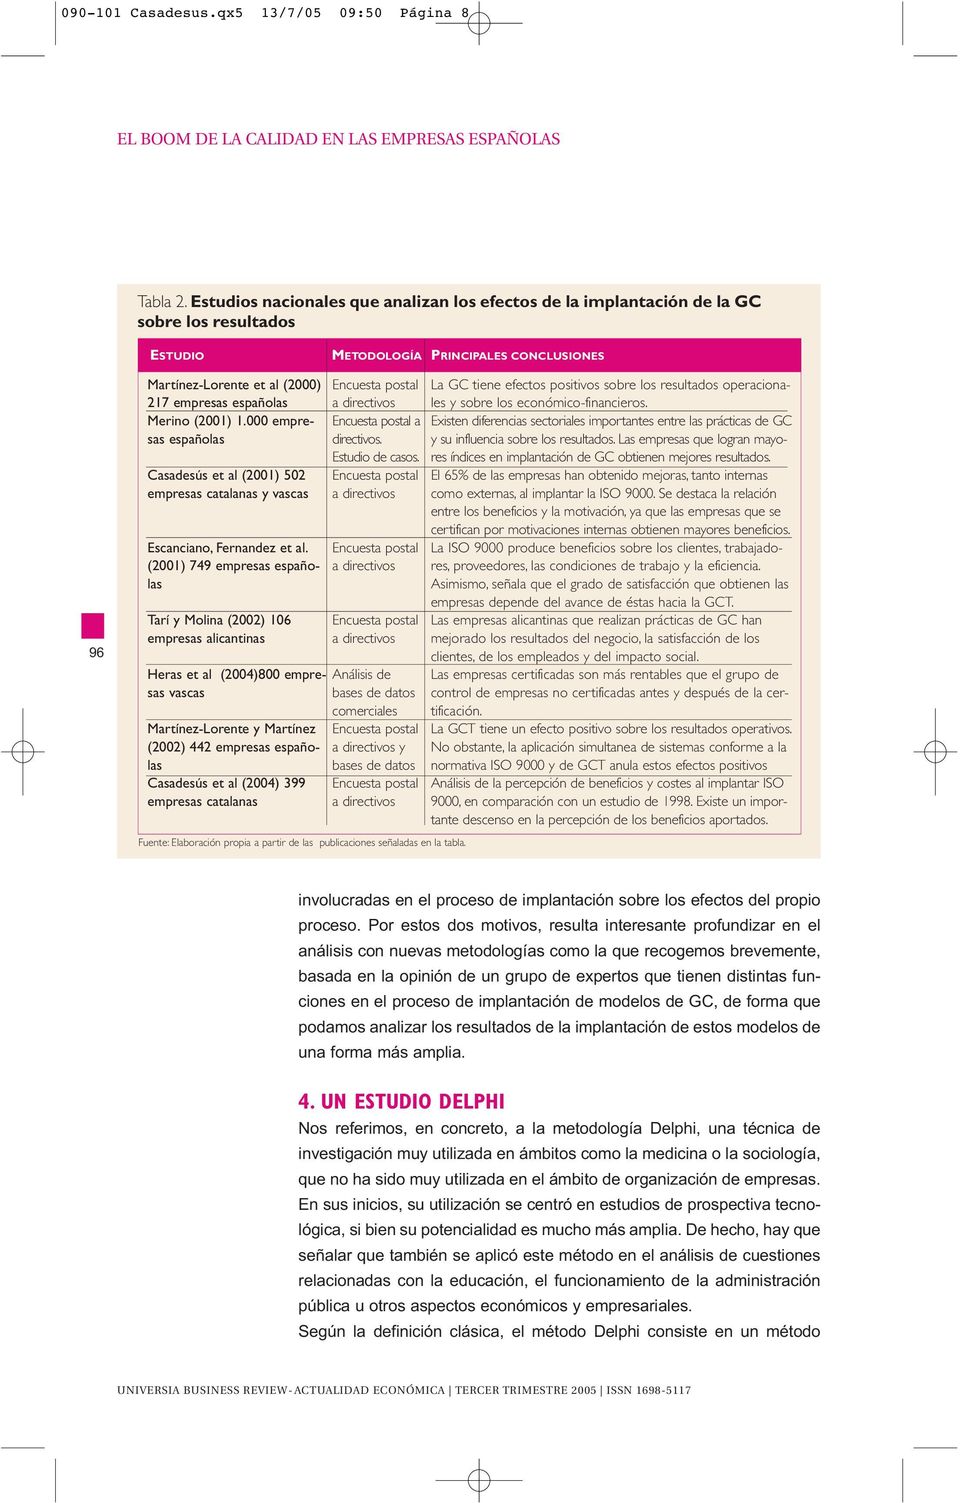 000 empresas españolas asadesús et al (2001) 502 empresas catalanas y vascas scanciano, Fernandez et al.